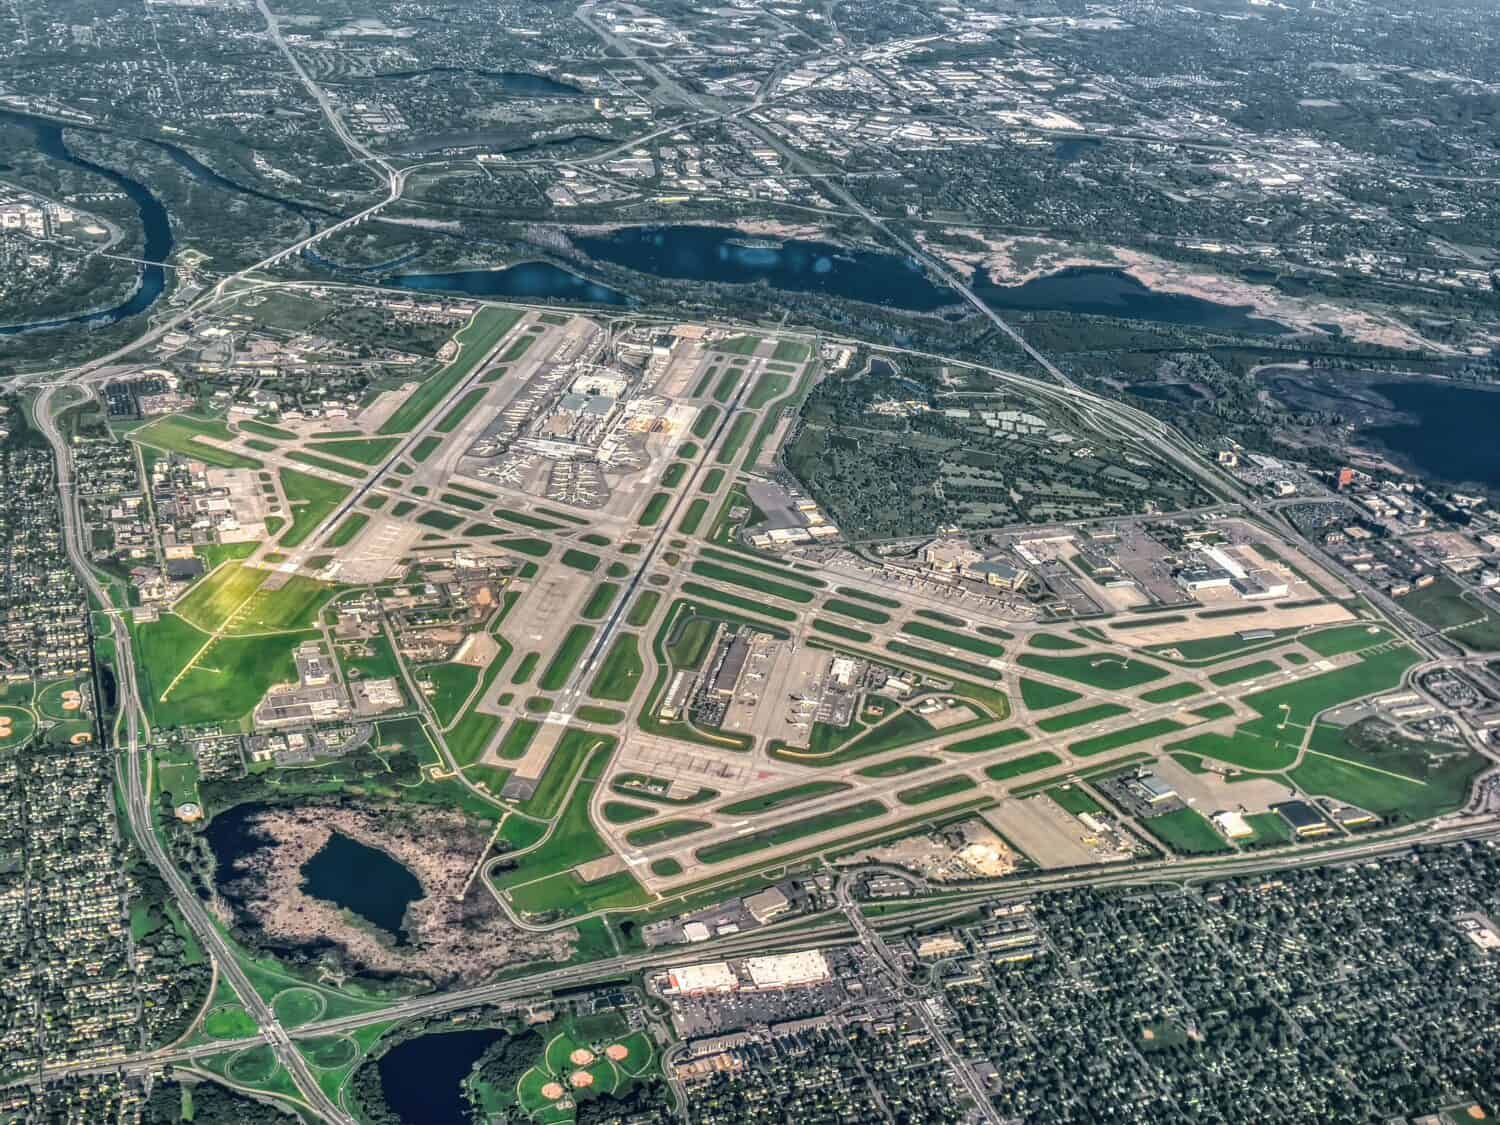 Vista aerea dell'aeroporto internazionale di Minneapolis St. Paul